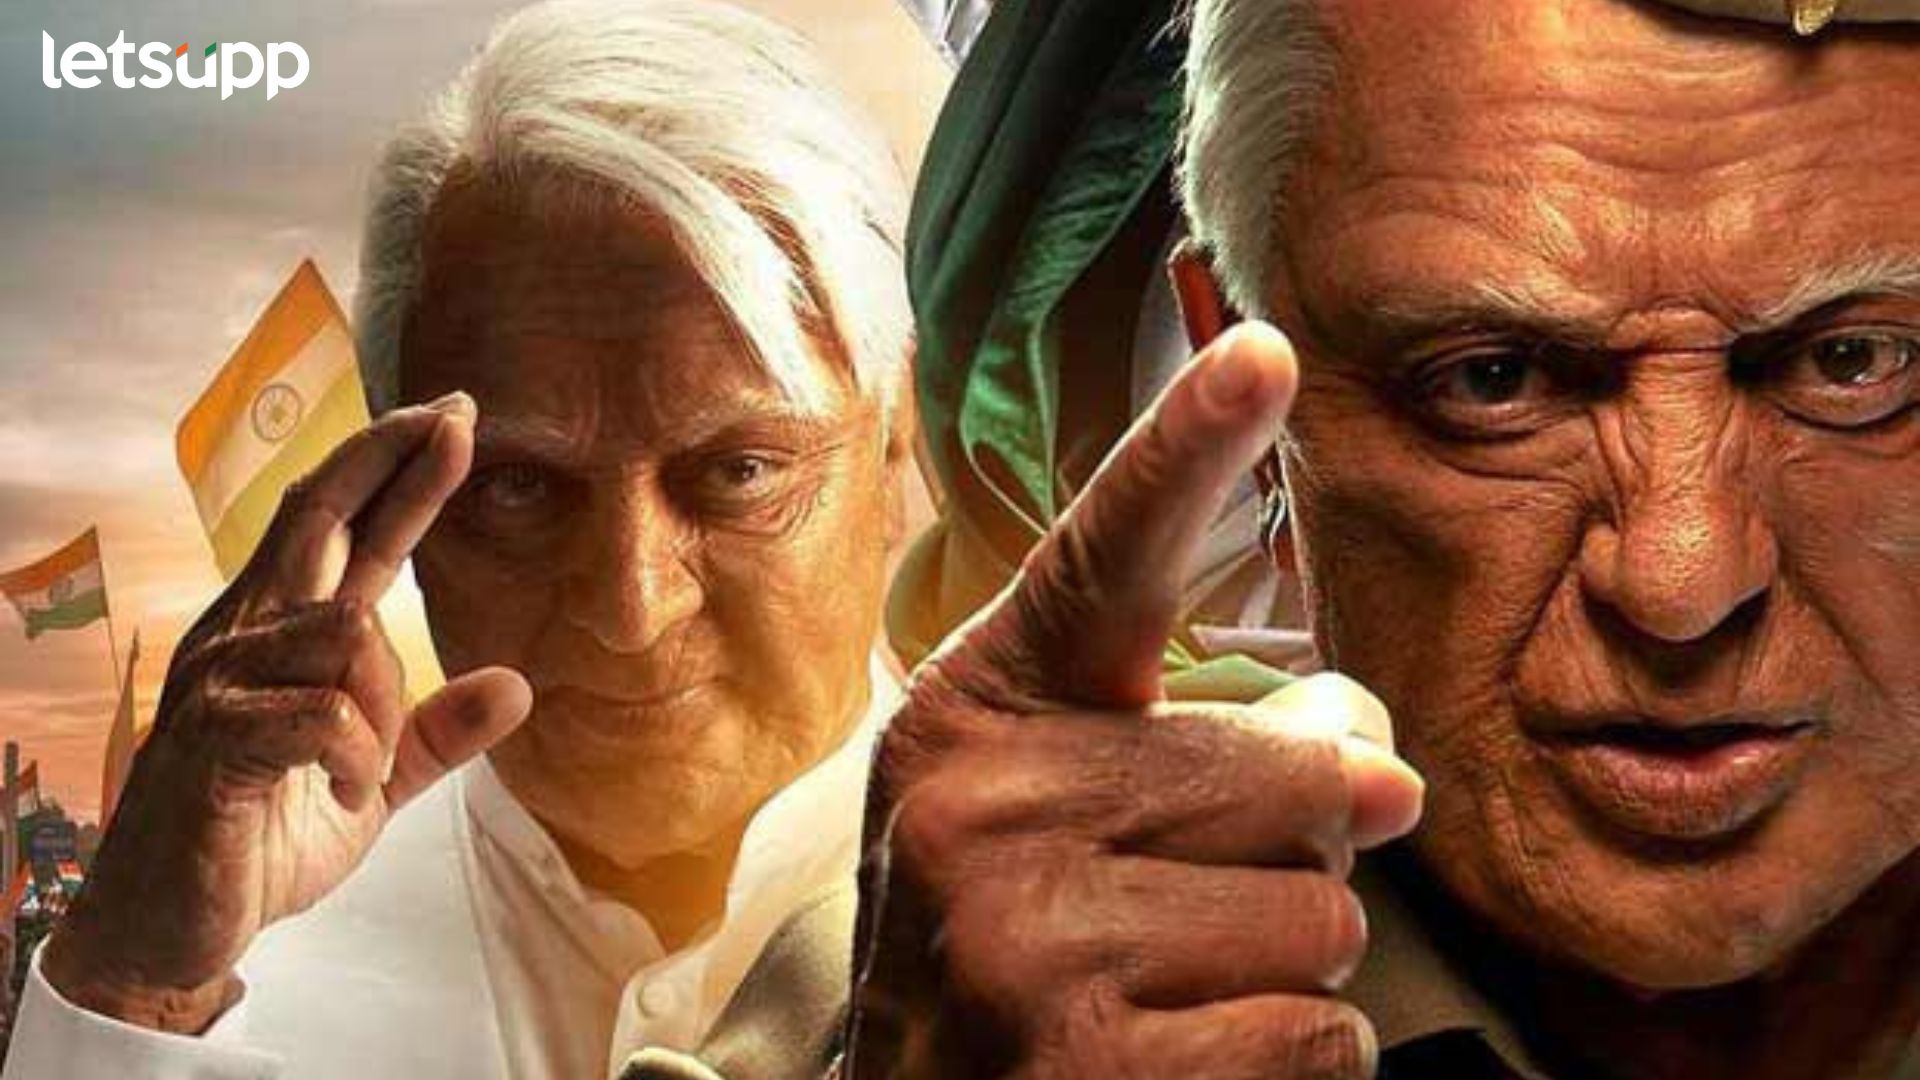 Indian 2 Trailer : कमल हसनच्या ‘इंडियन 2’ चा धमाकेदार ट्रेलर प्रदर्शित